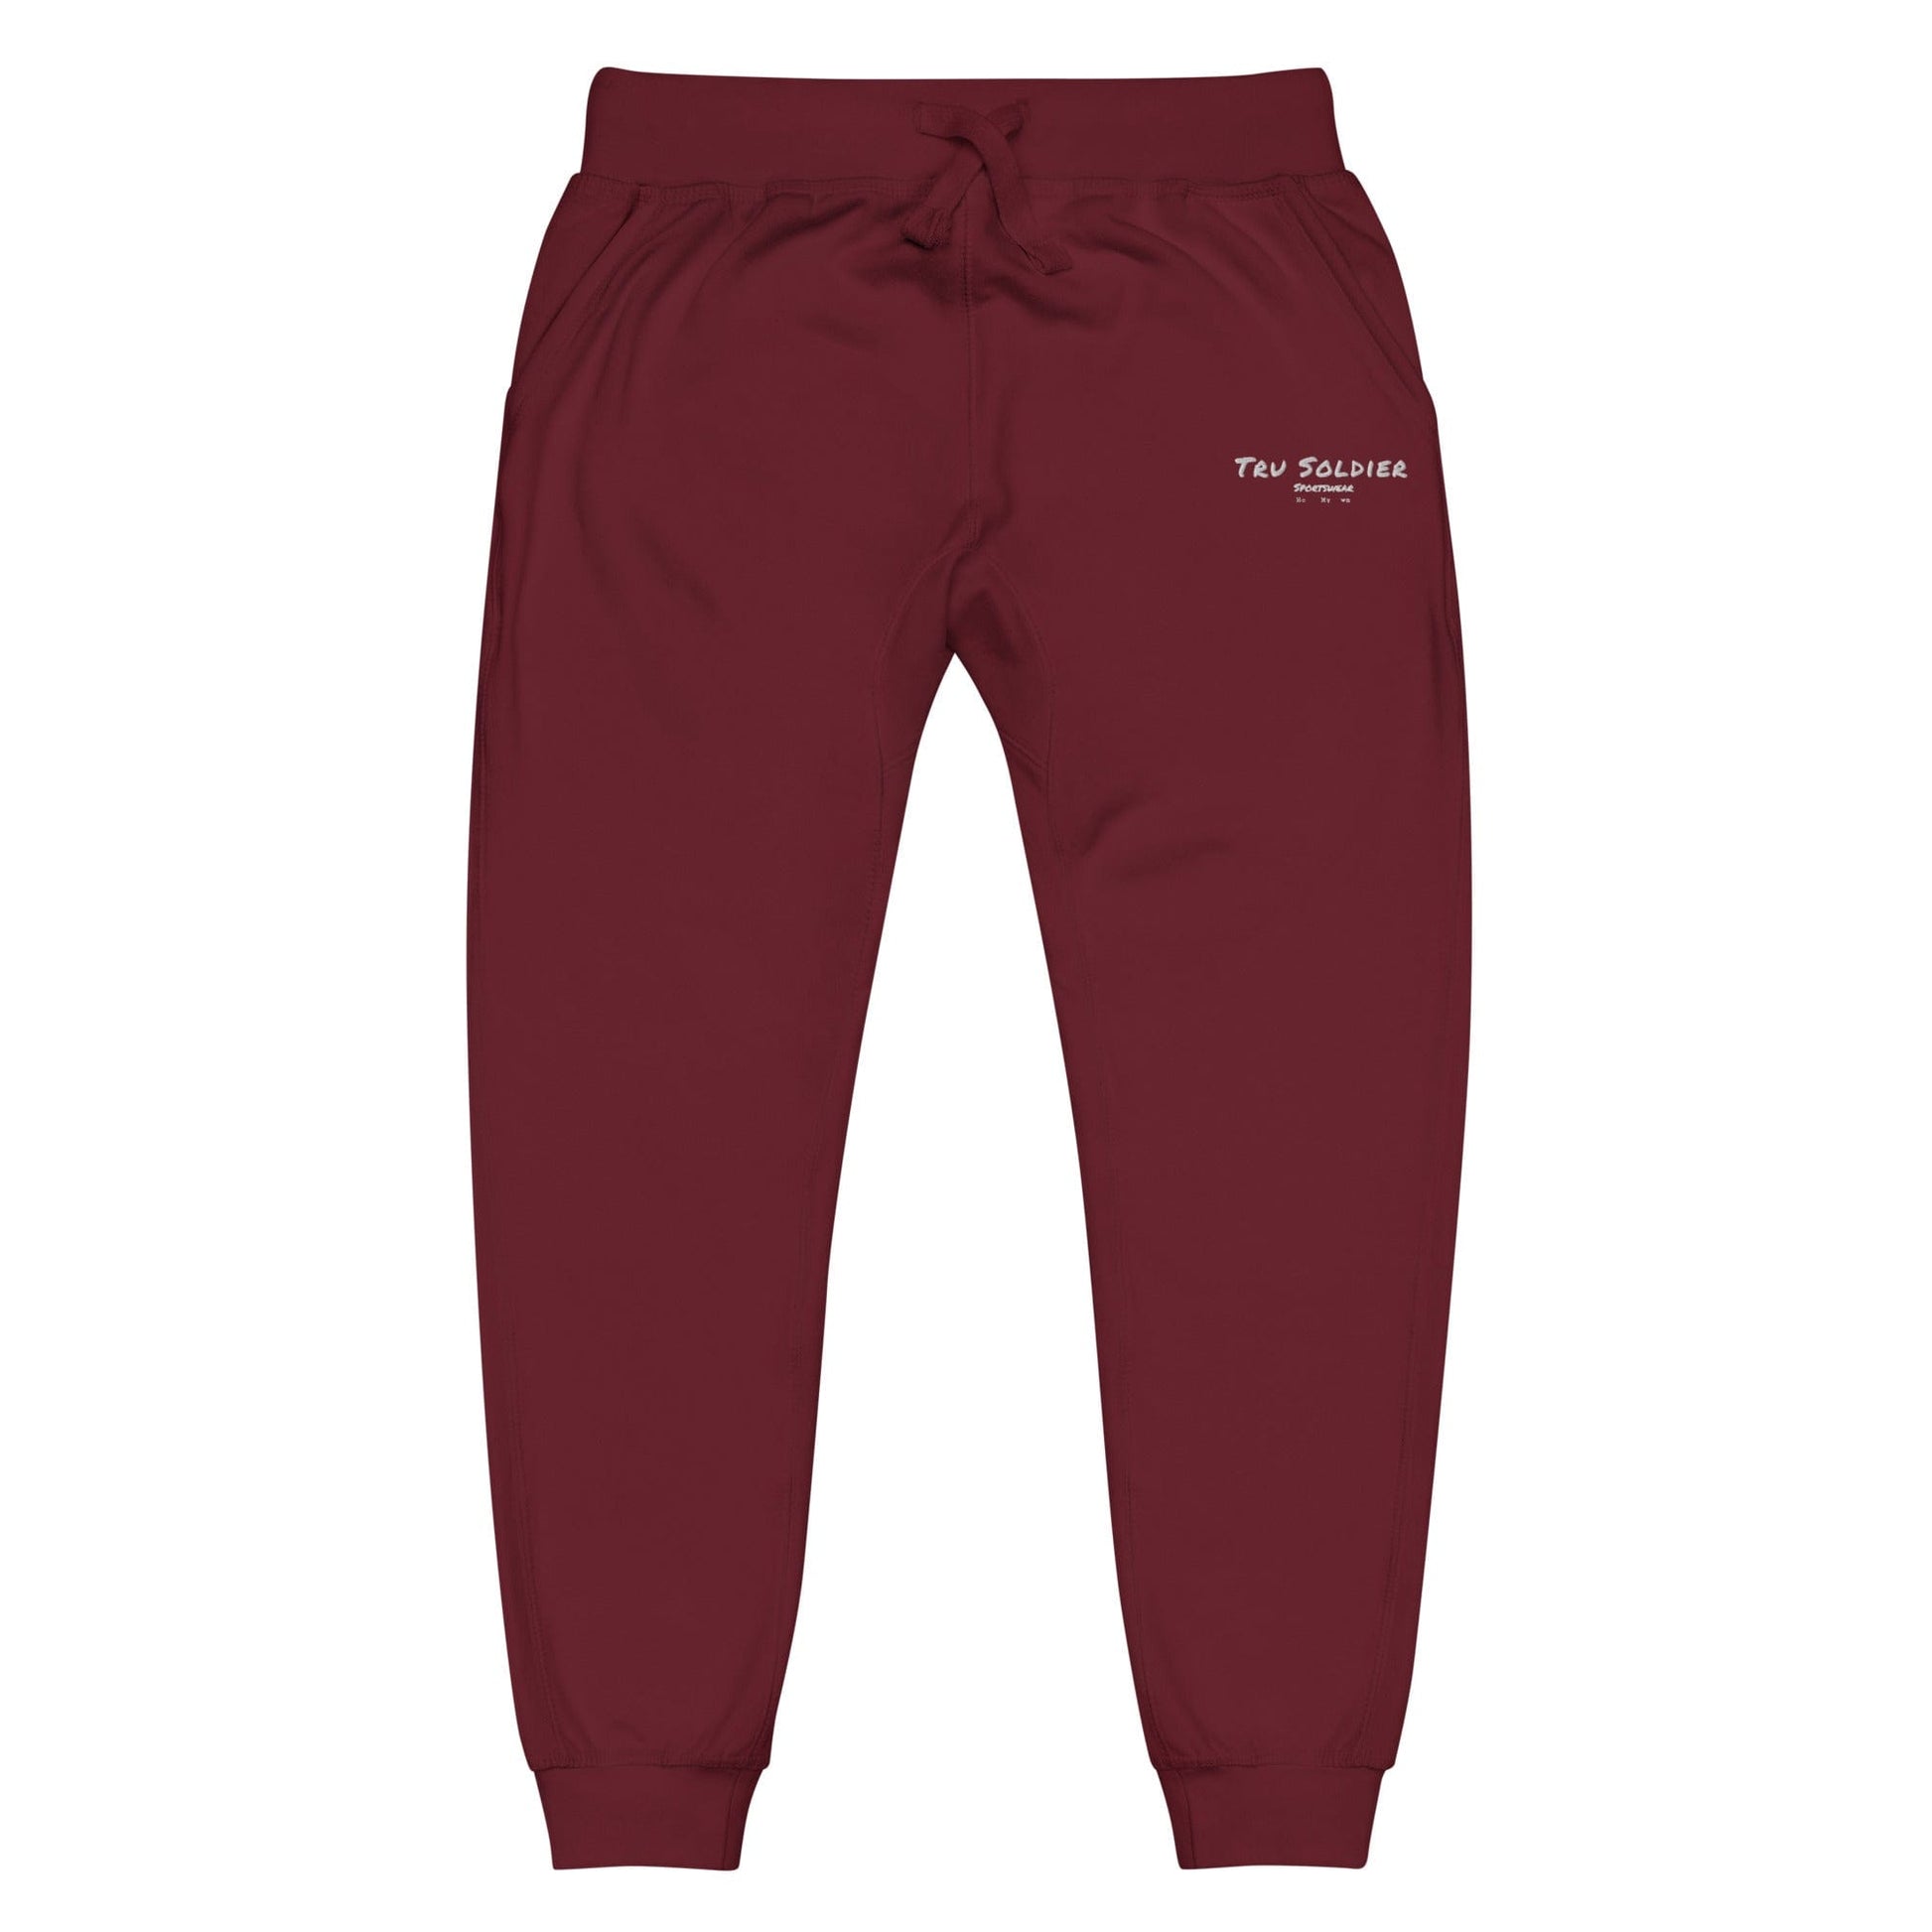 Tru Soldier Sportswear  Maroon / XS Unisex Signature fleece joggers